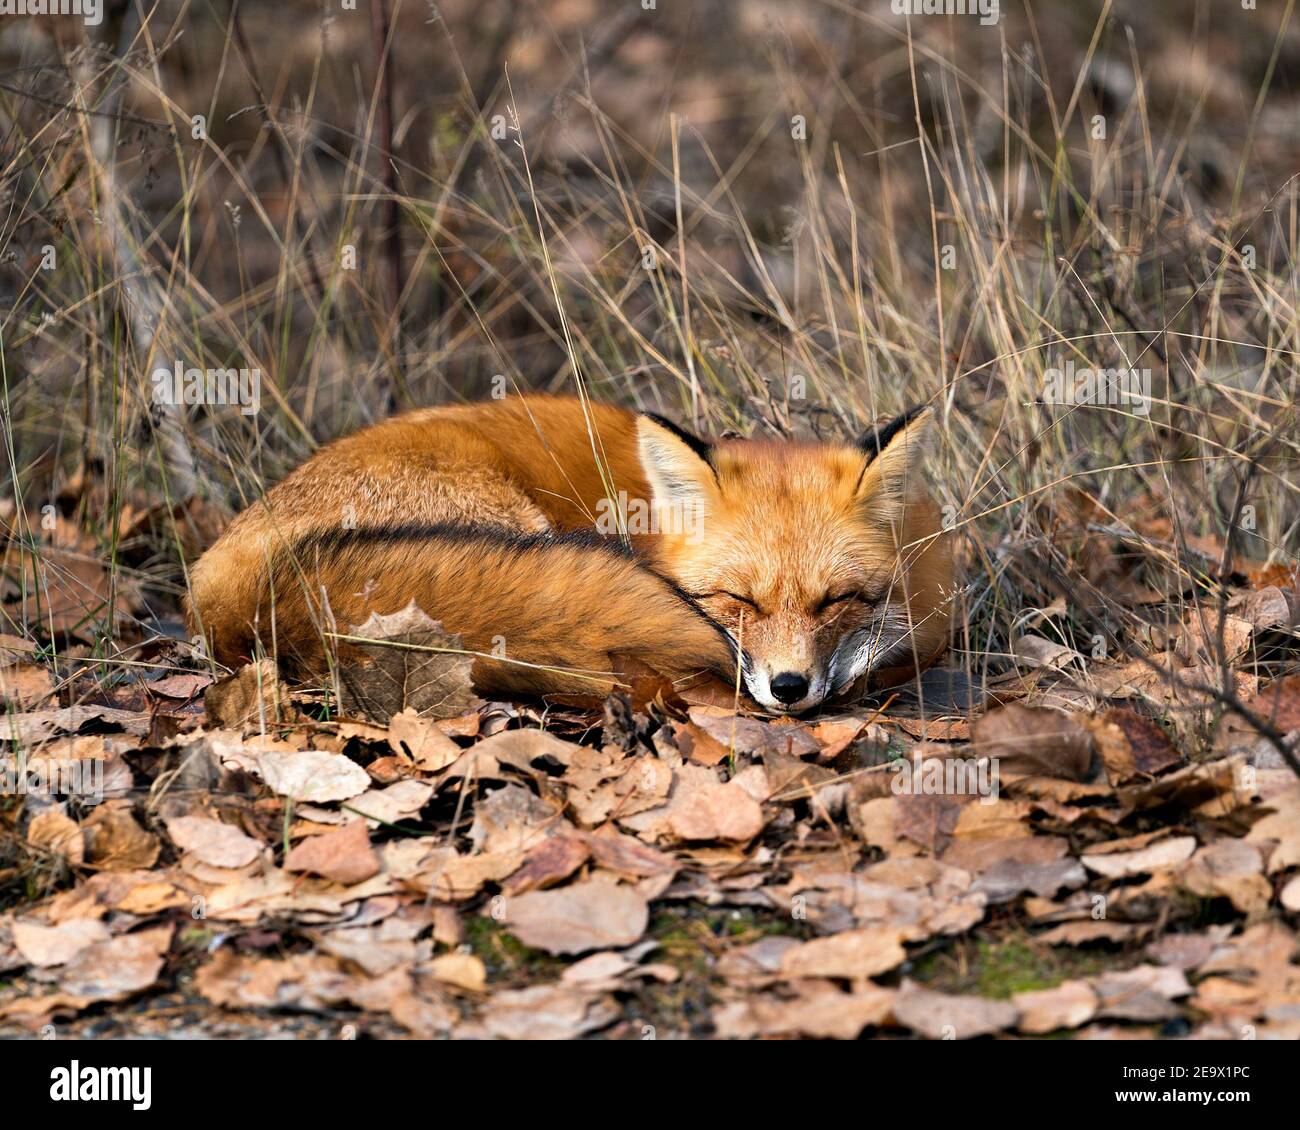 Red Fox nella foresta che riposa sulle foglie marroni d'autunno nel suo ambiente e habitat, mostrando coda di volpe, pelliccia di volpe. Immagine FOX. Immagine. Verticale. FOX, S. Foto Stock